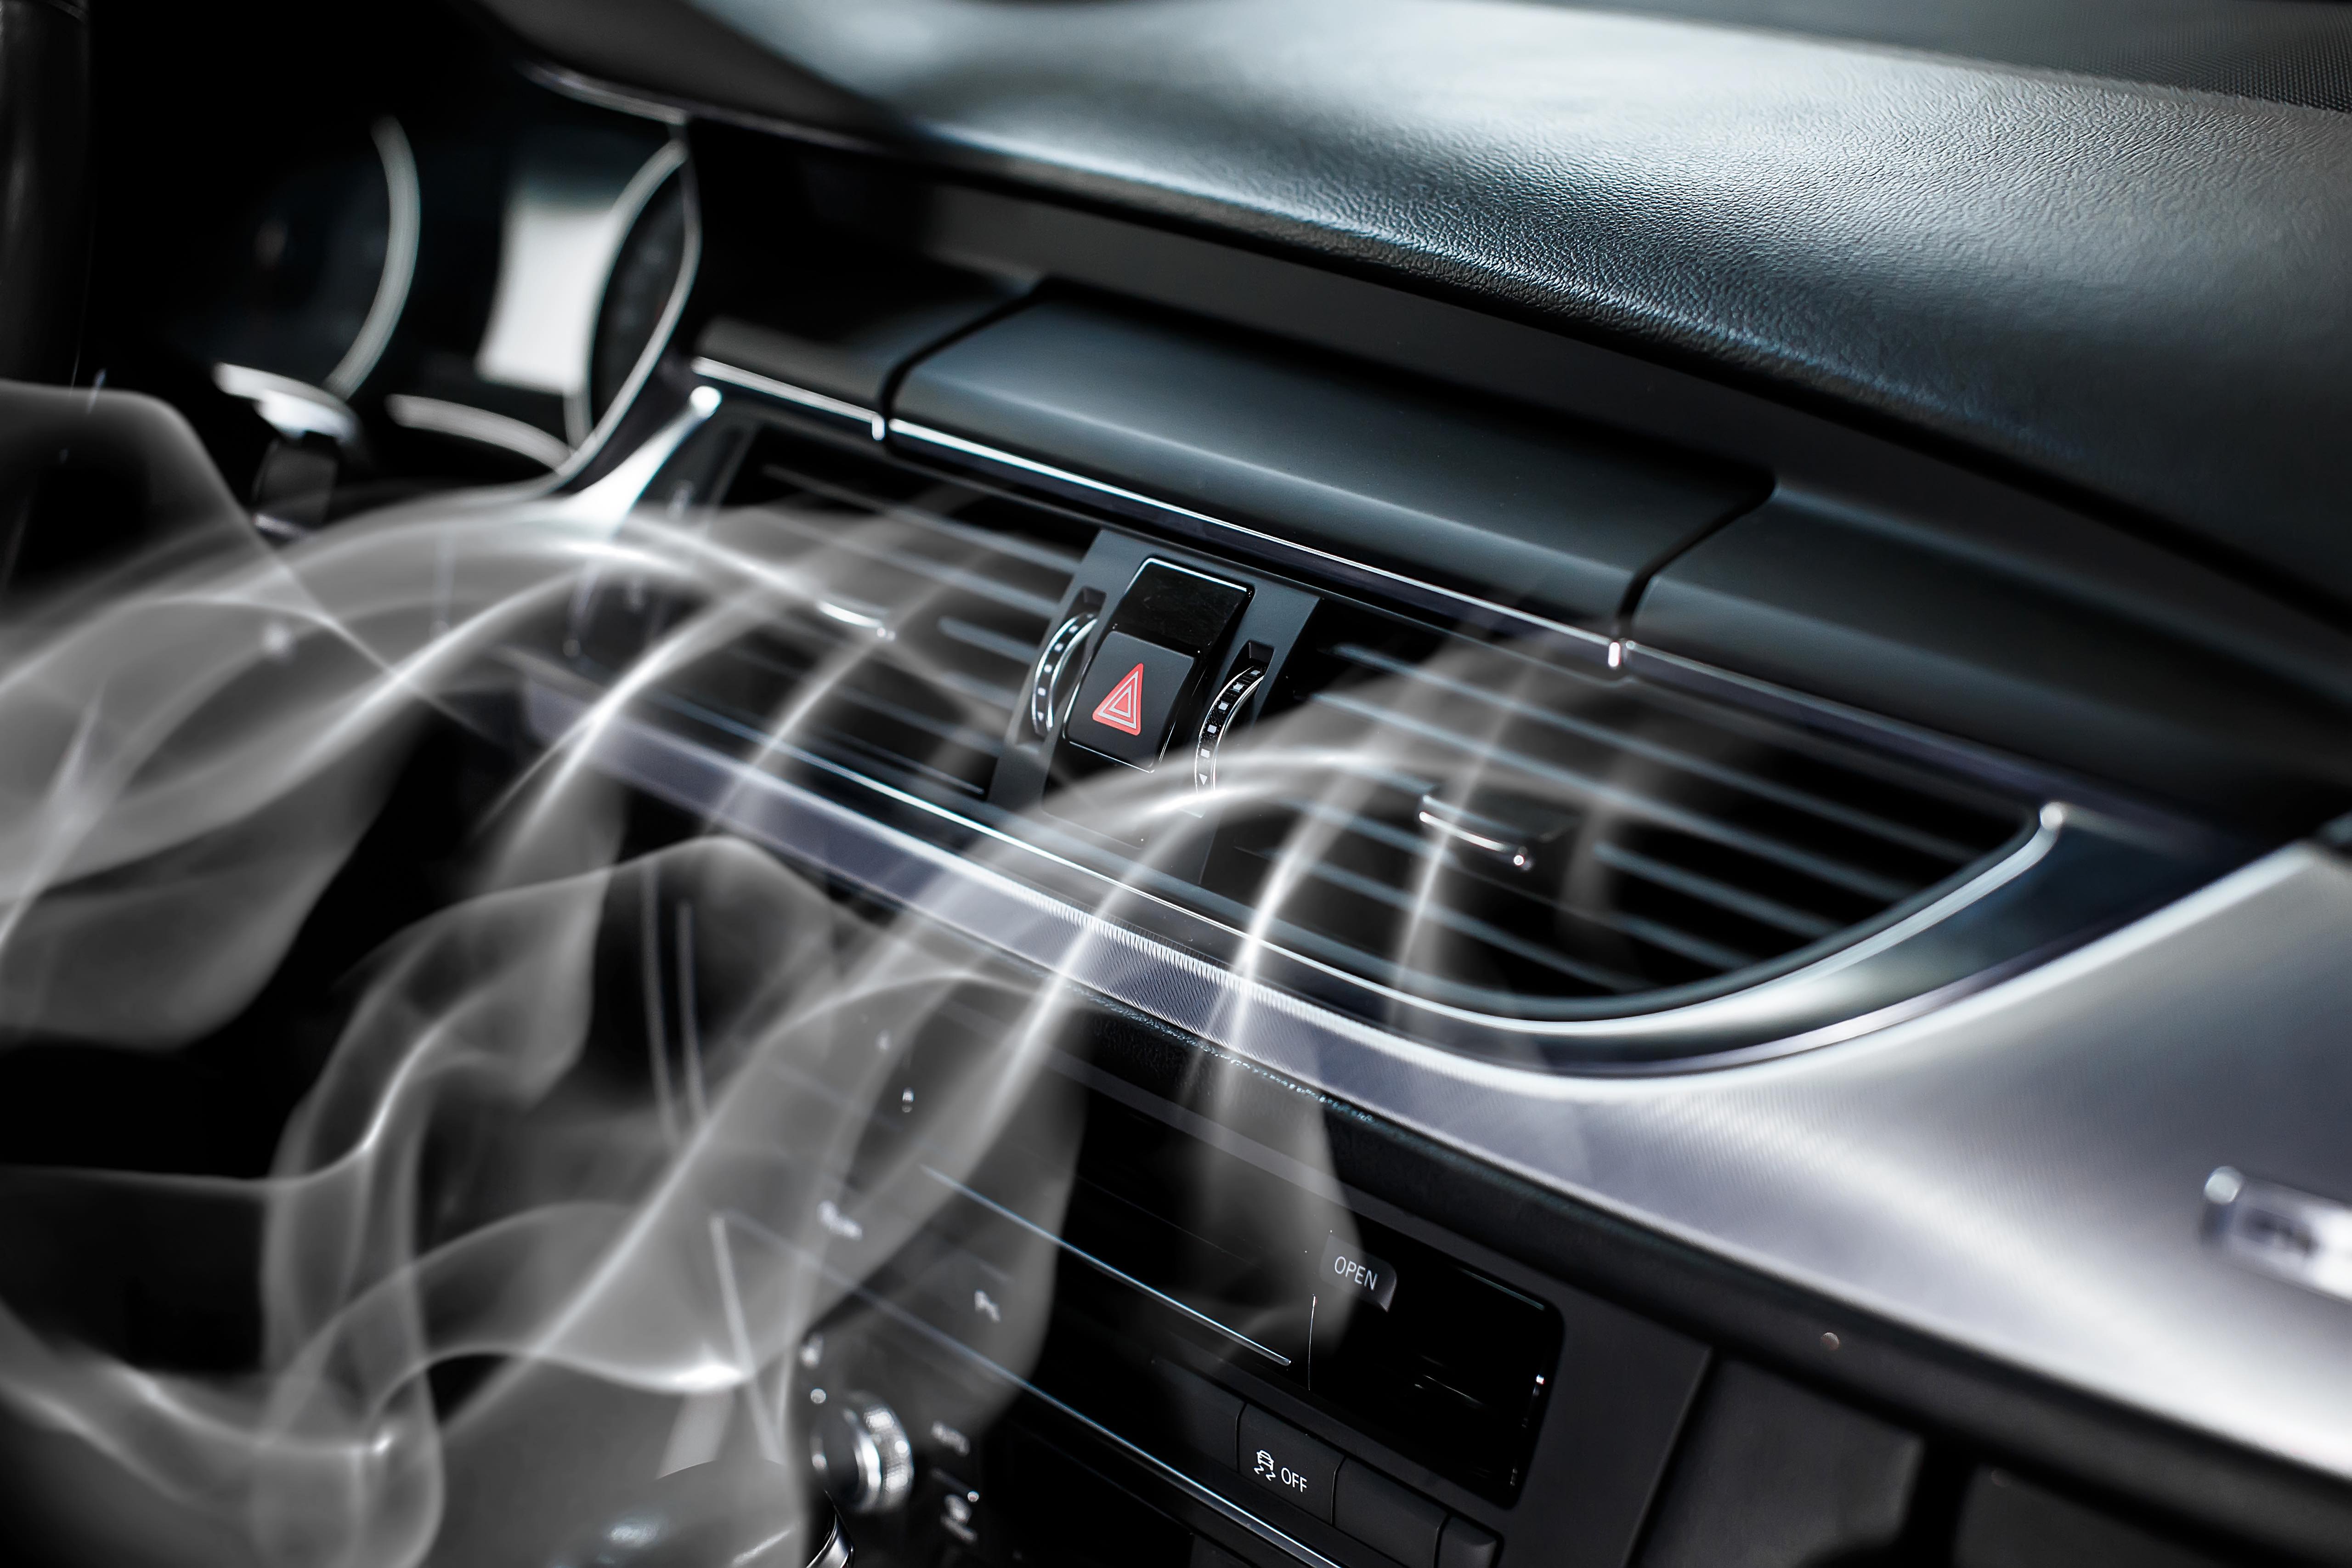 Klimaanlage in einem Auto. Kann man sich dadurch erkÃ¤lten?